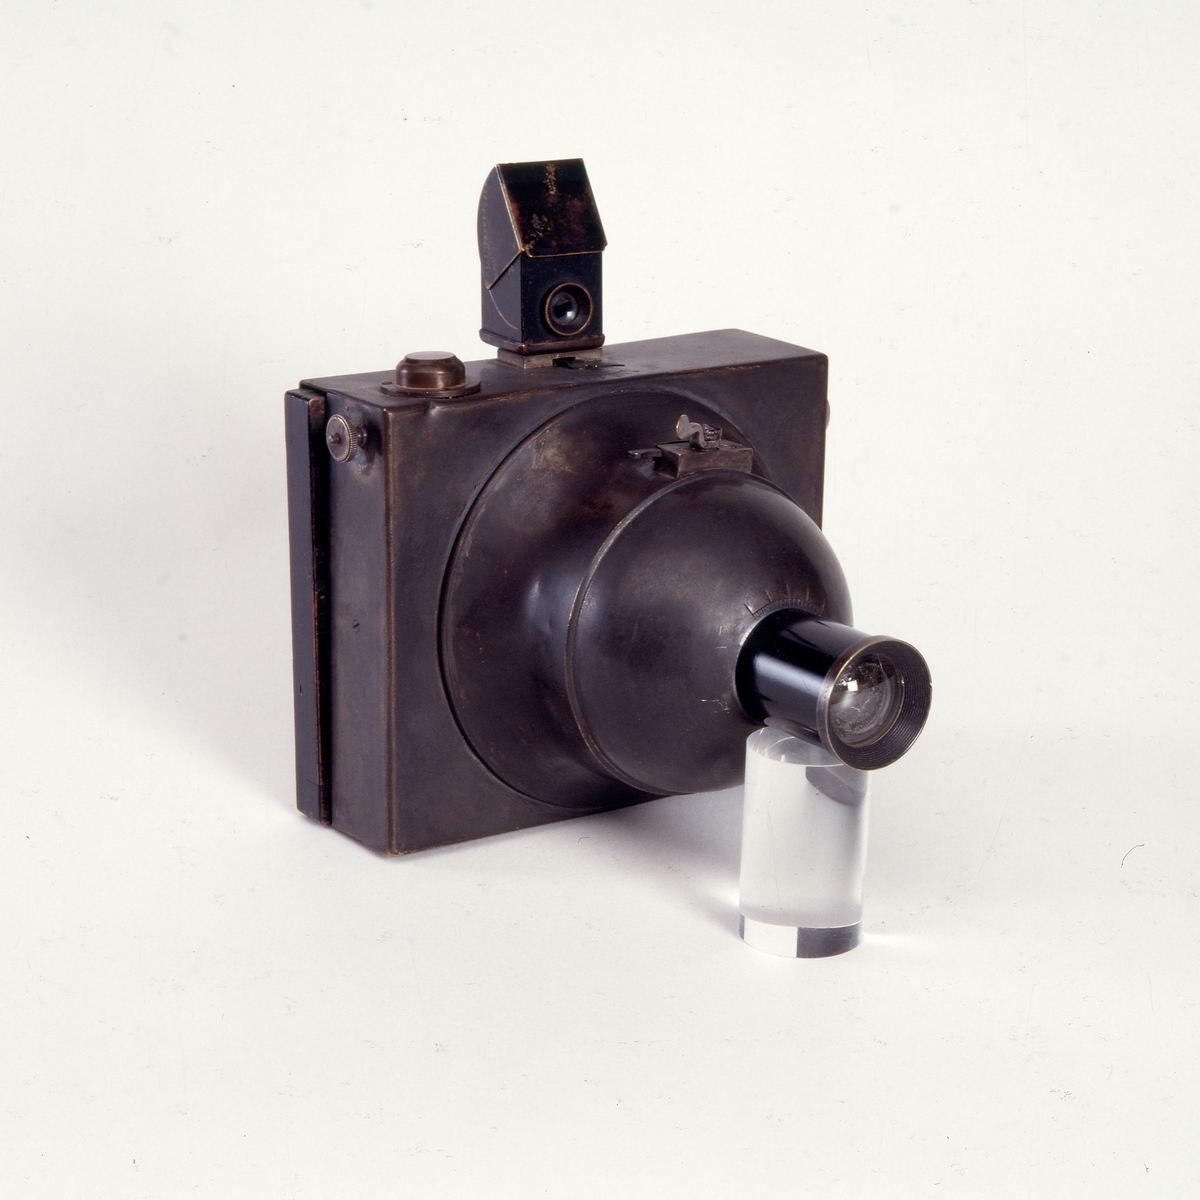 Photosphere er et platekamera designet og patentert av Napoléon Conti i 1888, og produsert av Compagnie Française de Photographie i Paris. Kameraet er et av de første kameraene i helmetall, spesielt tiltenkt bruk i tropiske strøk. 
Platestørrelsen er på 9 x 12 cm. 
Photosphere ble laget i flere størrelser, også stereokamera.